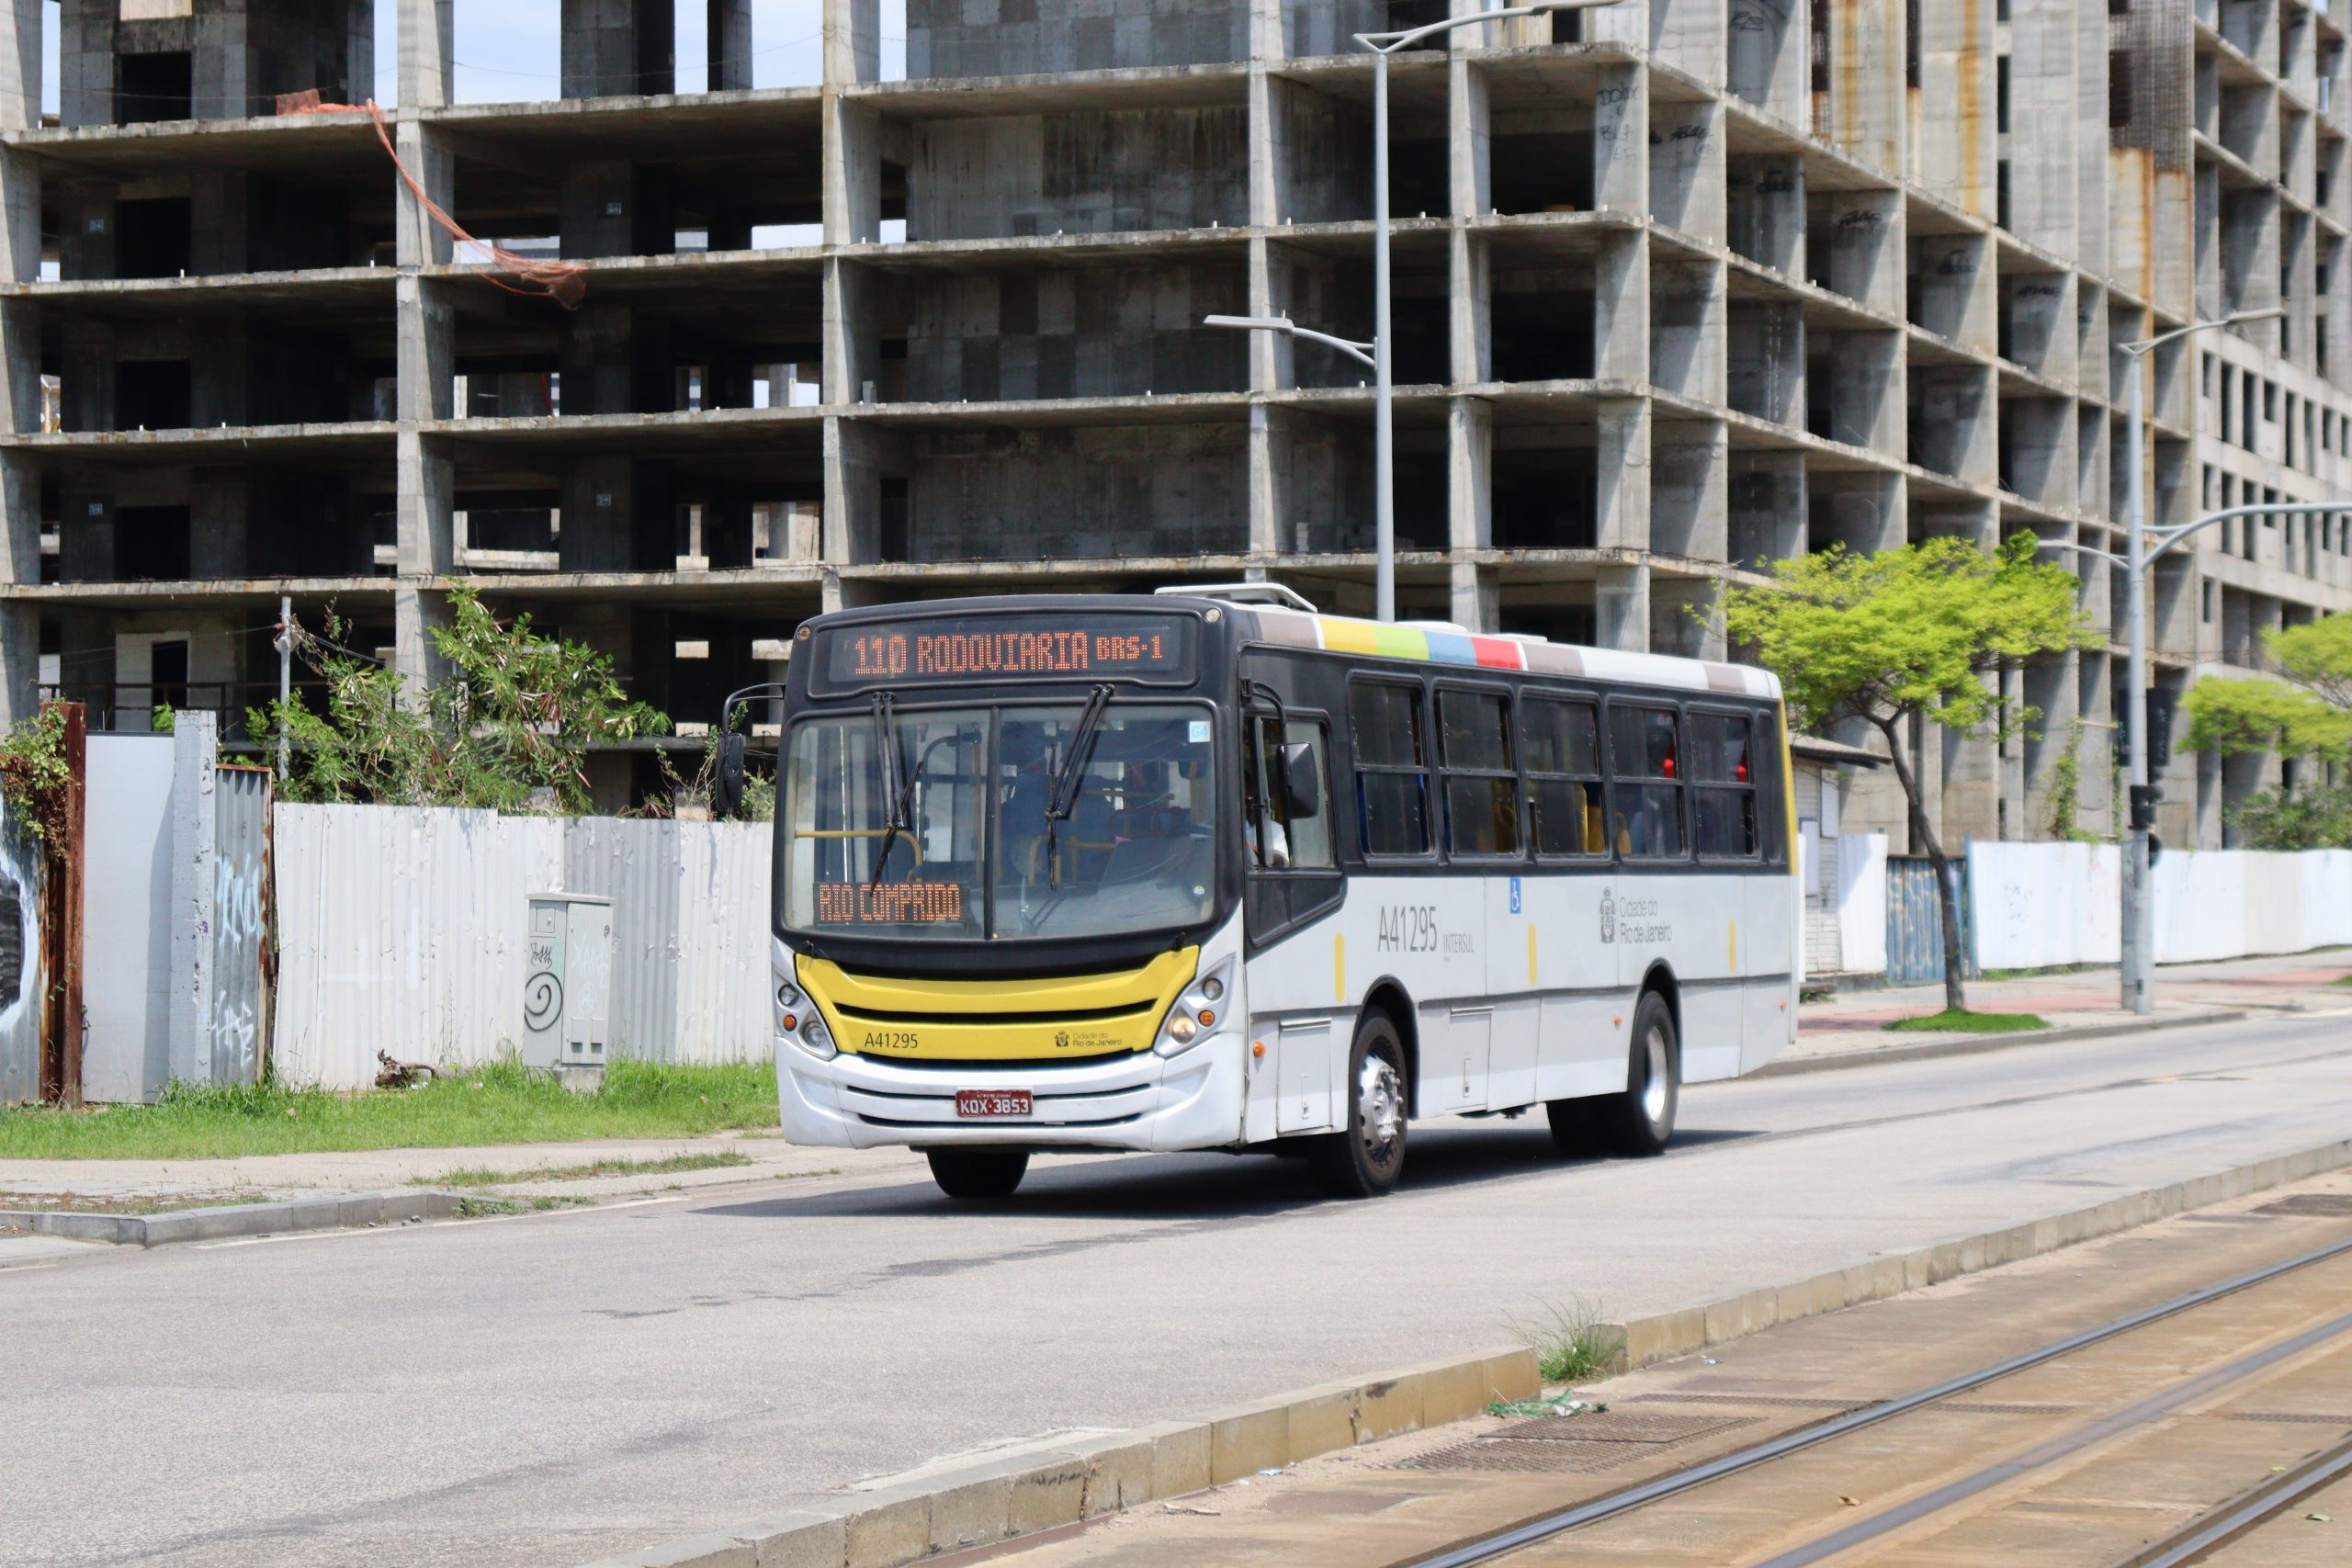 Ônibus do modelo "midi/micrão" na cidade do Rio de Janeiro, com vistas destinada a linha 110 - Rodoviária X Leblon